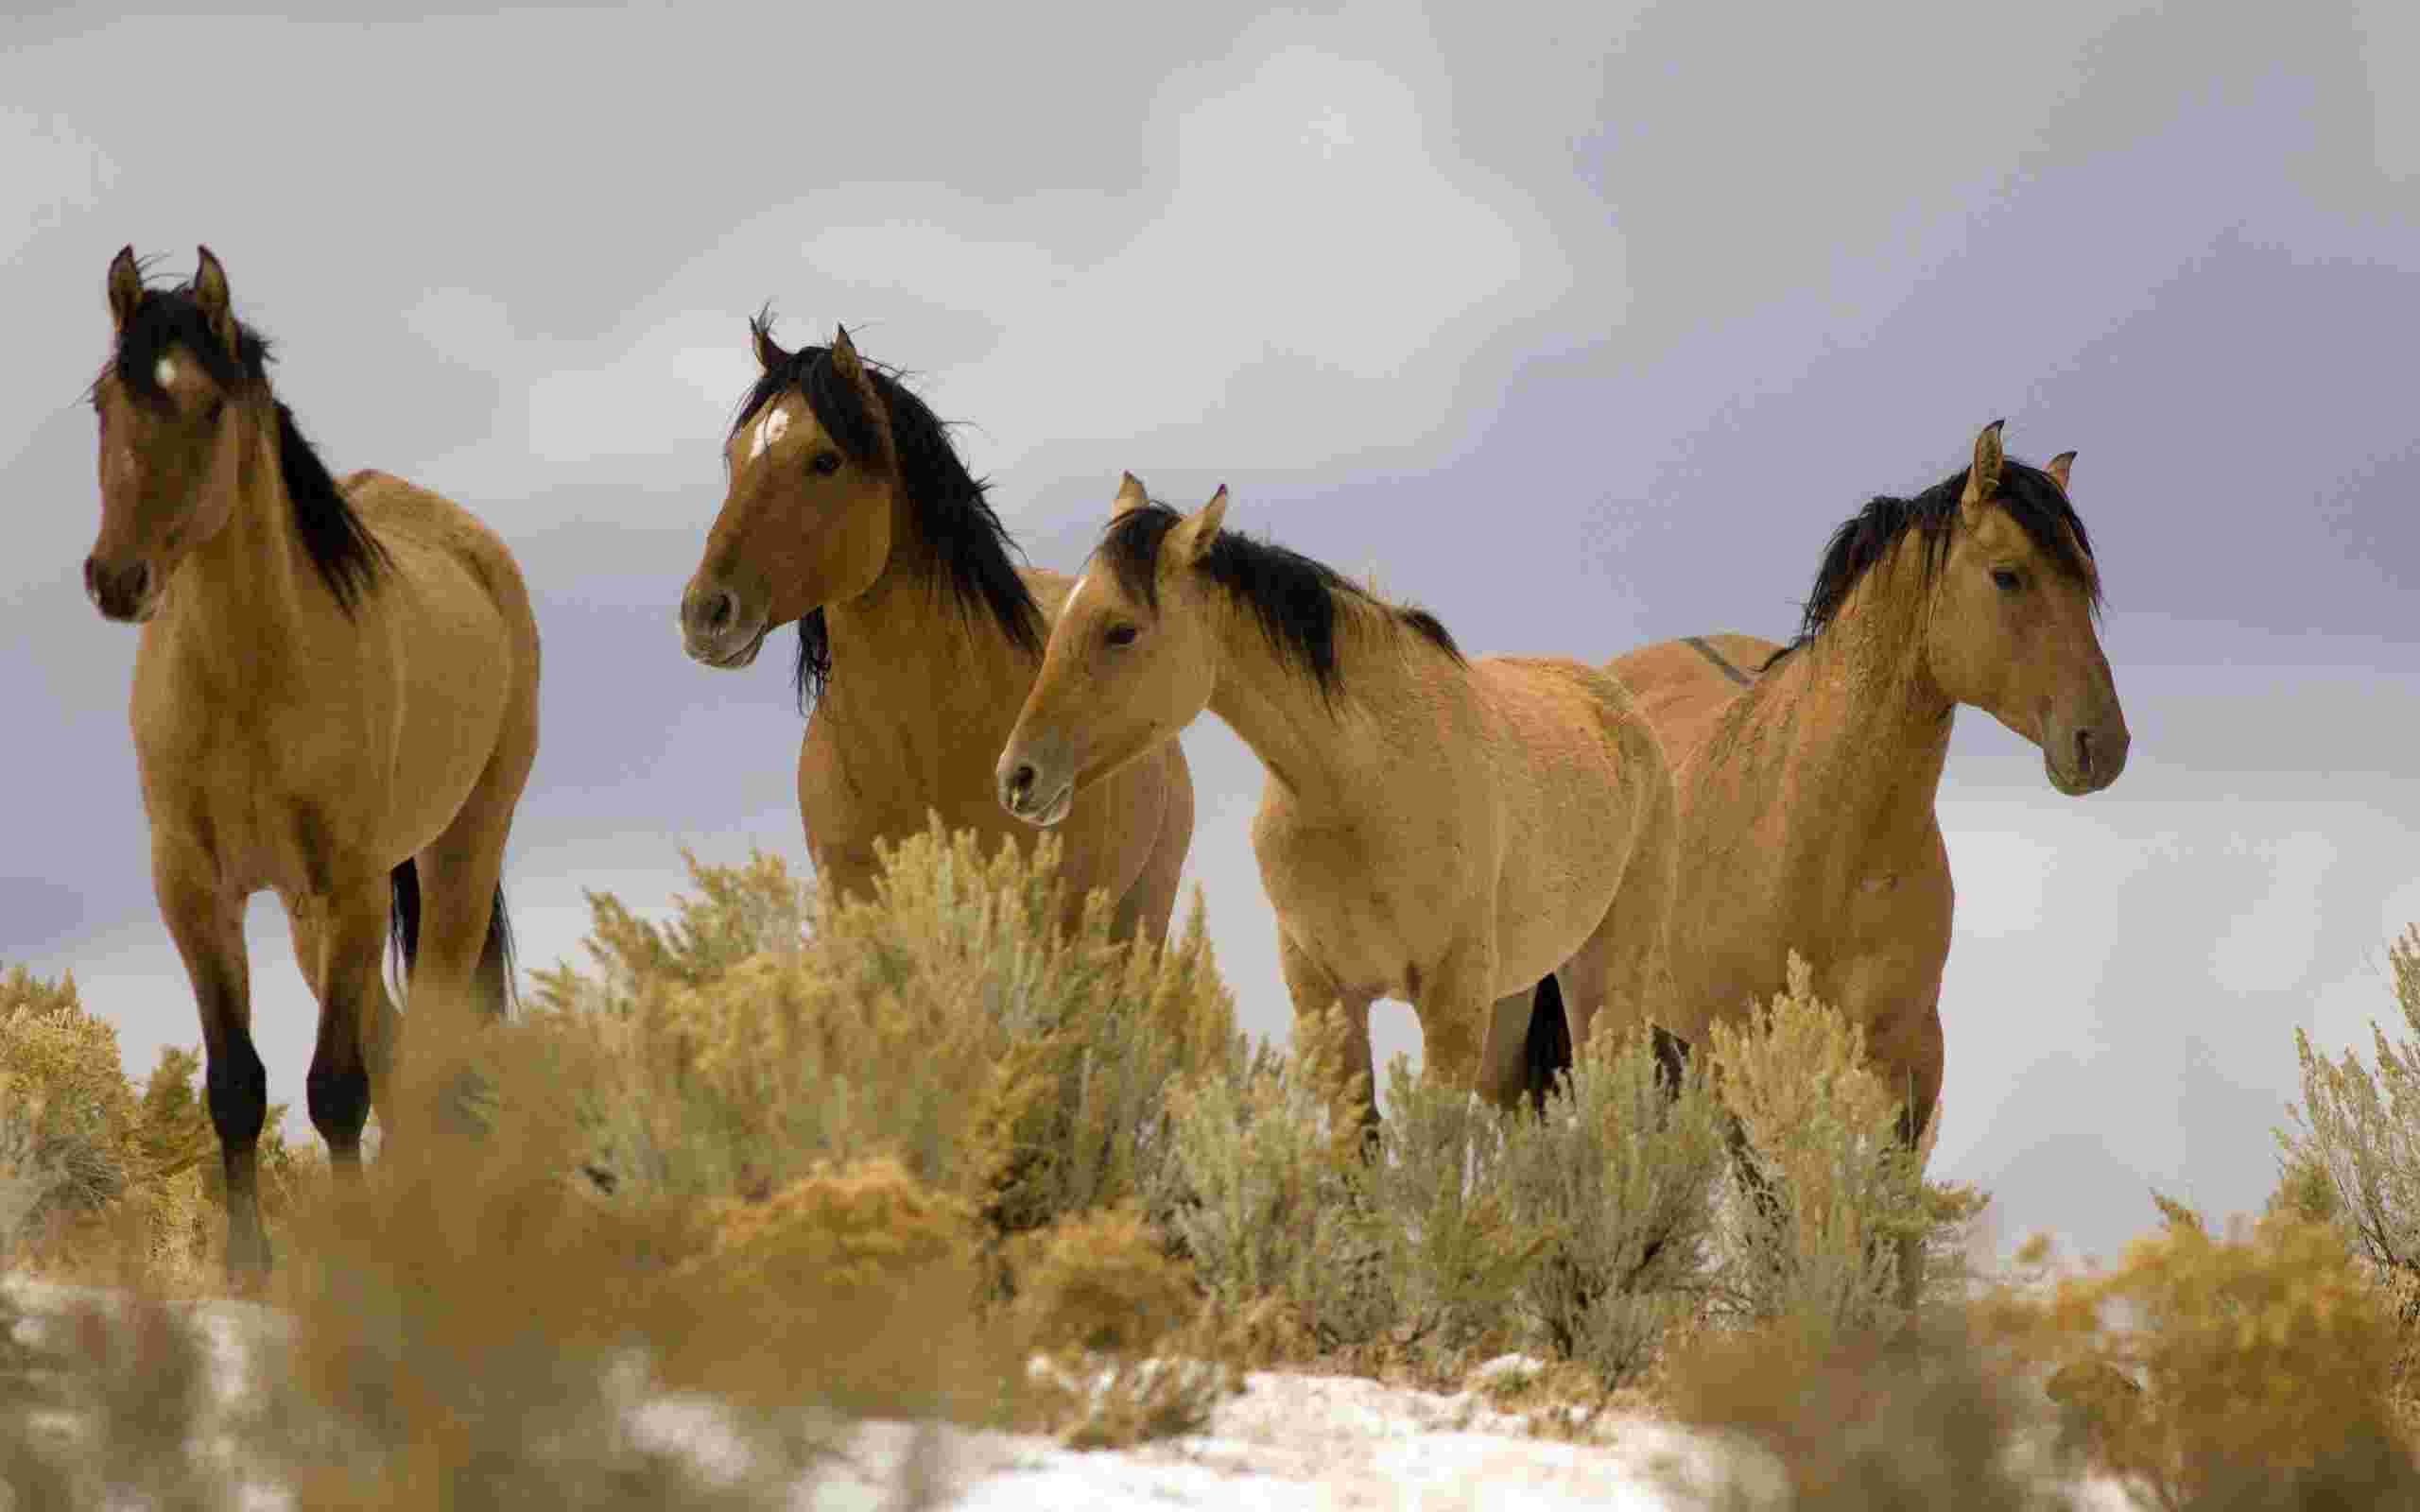 Kiger Mustang Wallpaper. Kiger Mustang Wallpaper, Mustang Girl Wallpaper and Sick Mustang Wallpaper